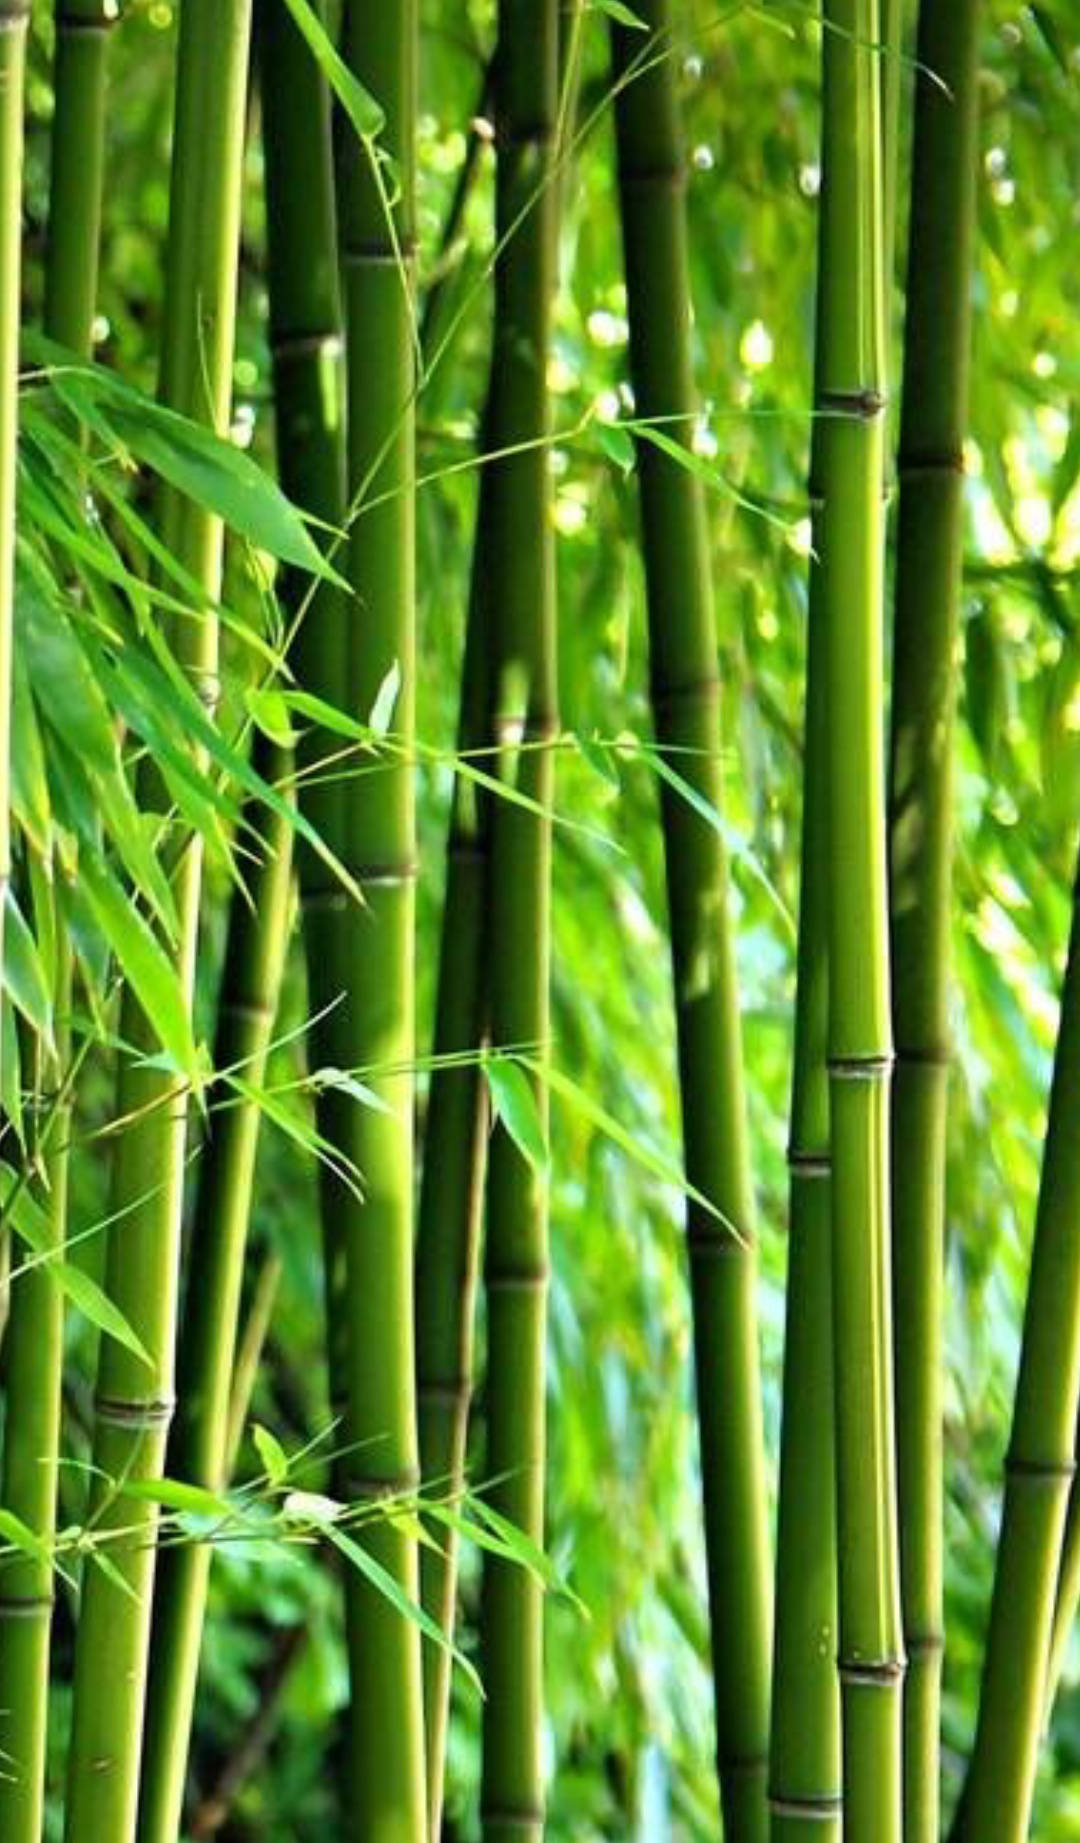 Fondode Pantalla Para Iphone: Bosque De Bambú Con Hojas Verdes. Fondo de pantalla